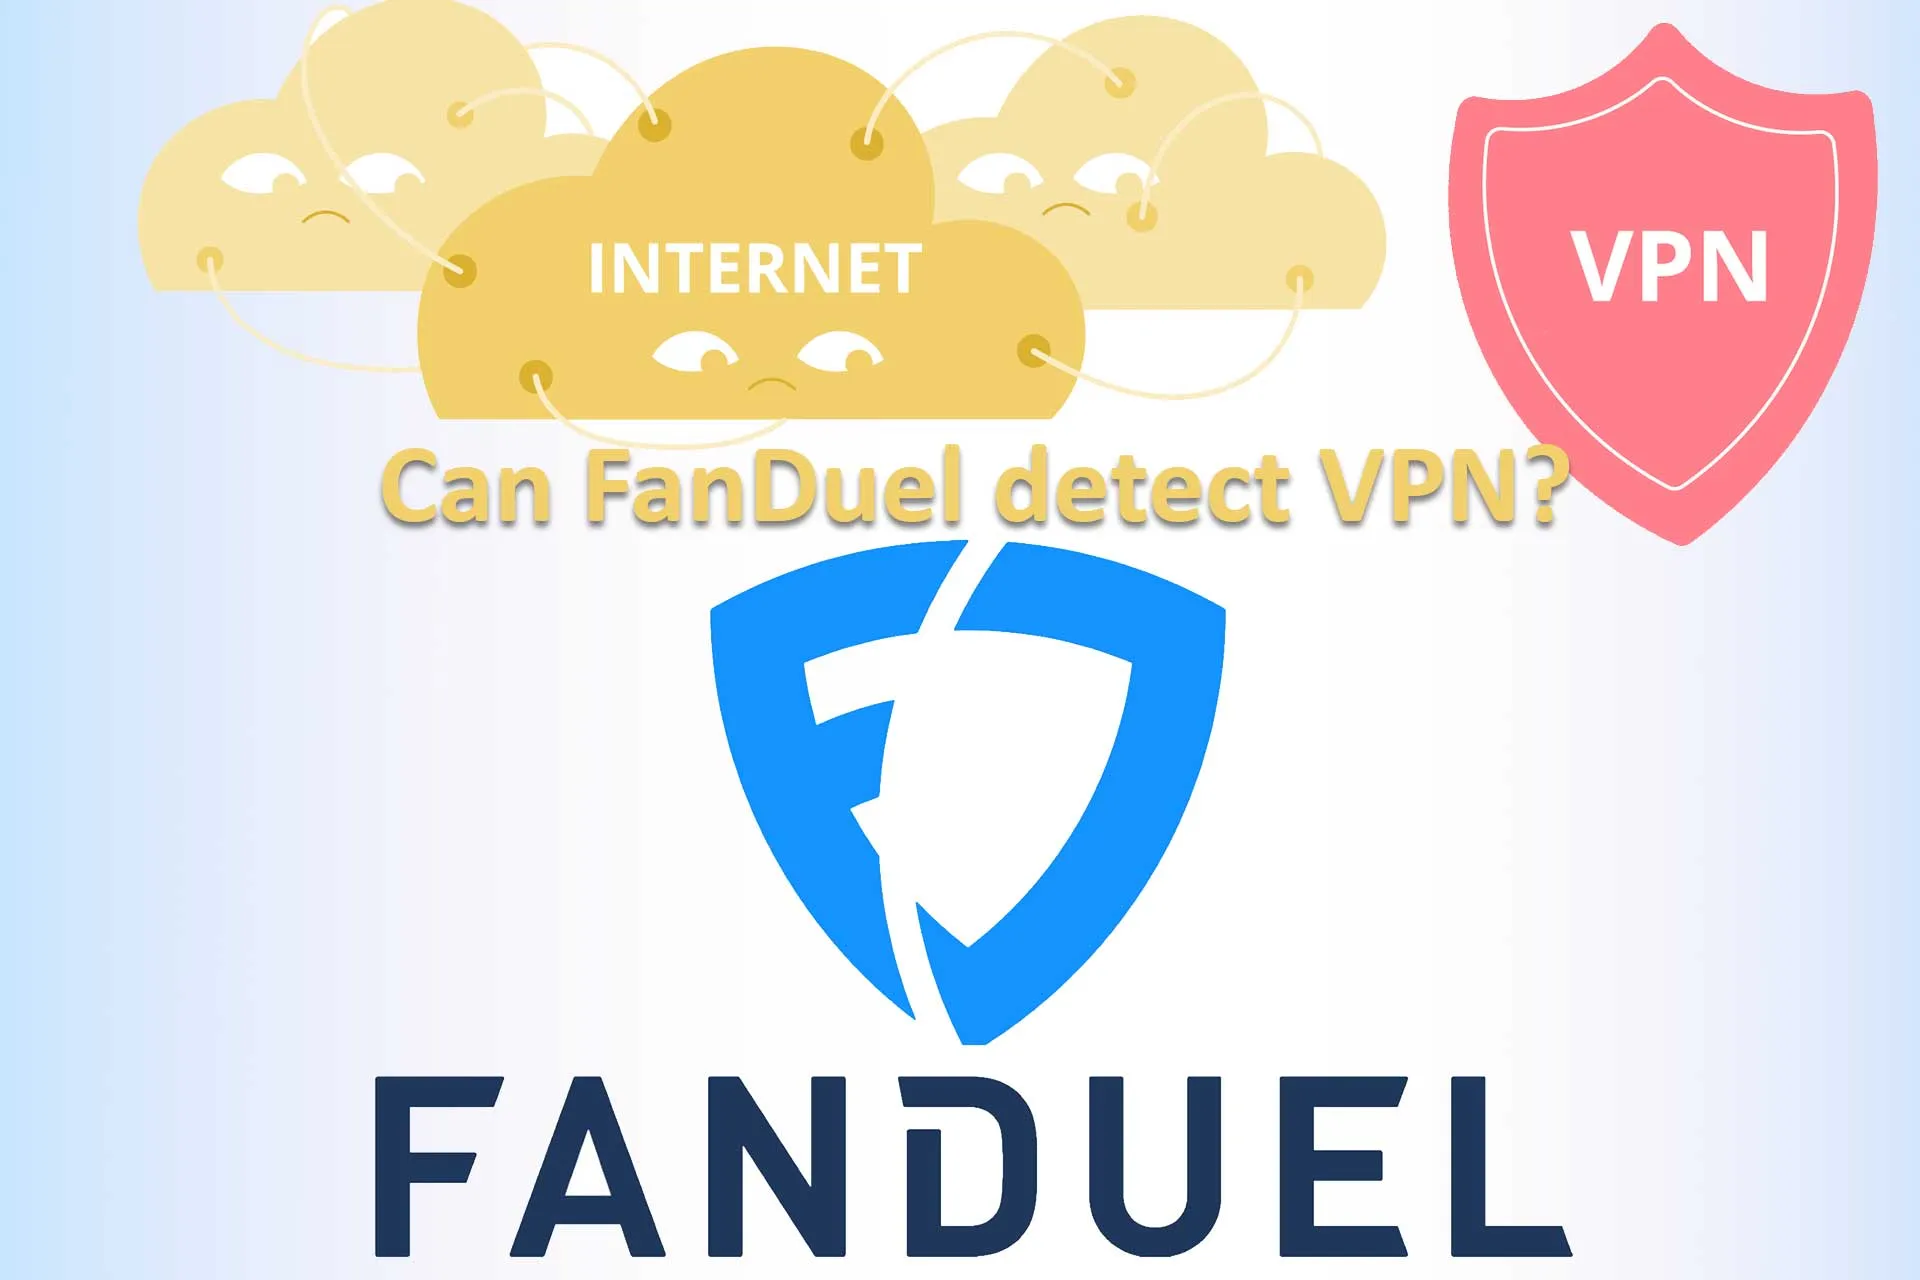 Can FanDuel detect VPN